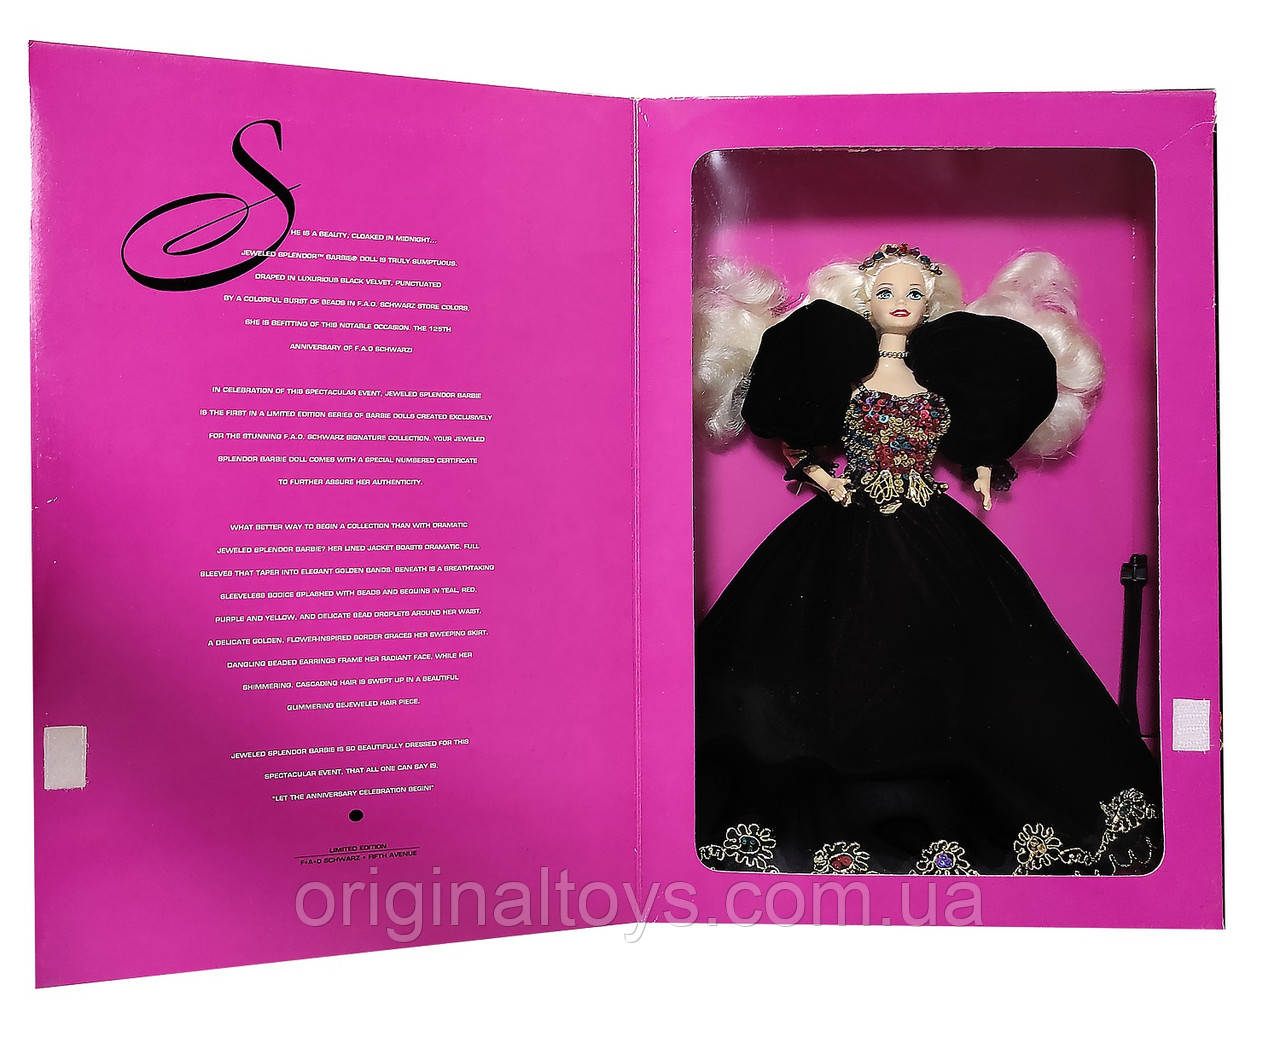 Колекційна лялька Барбі Дорогоцінна велич Barbie Jeweled Splendor 1995 Mattel 14061